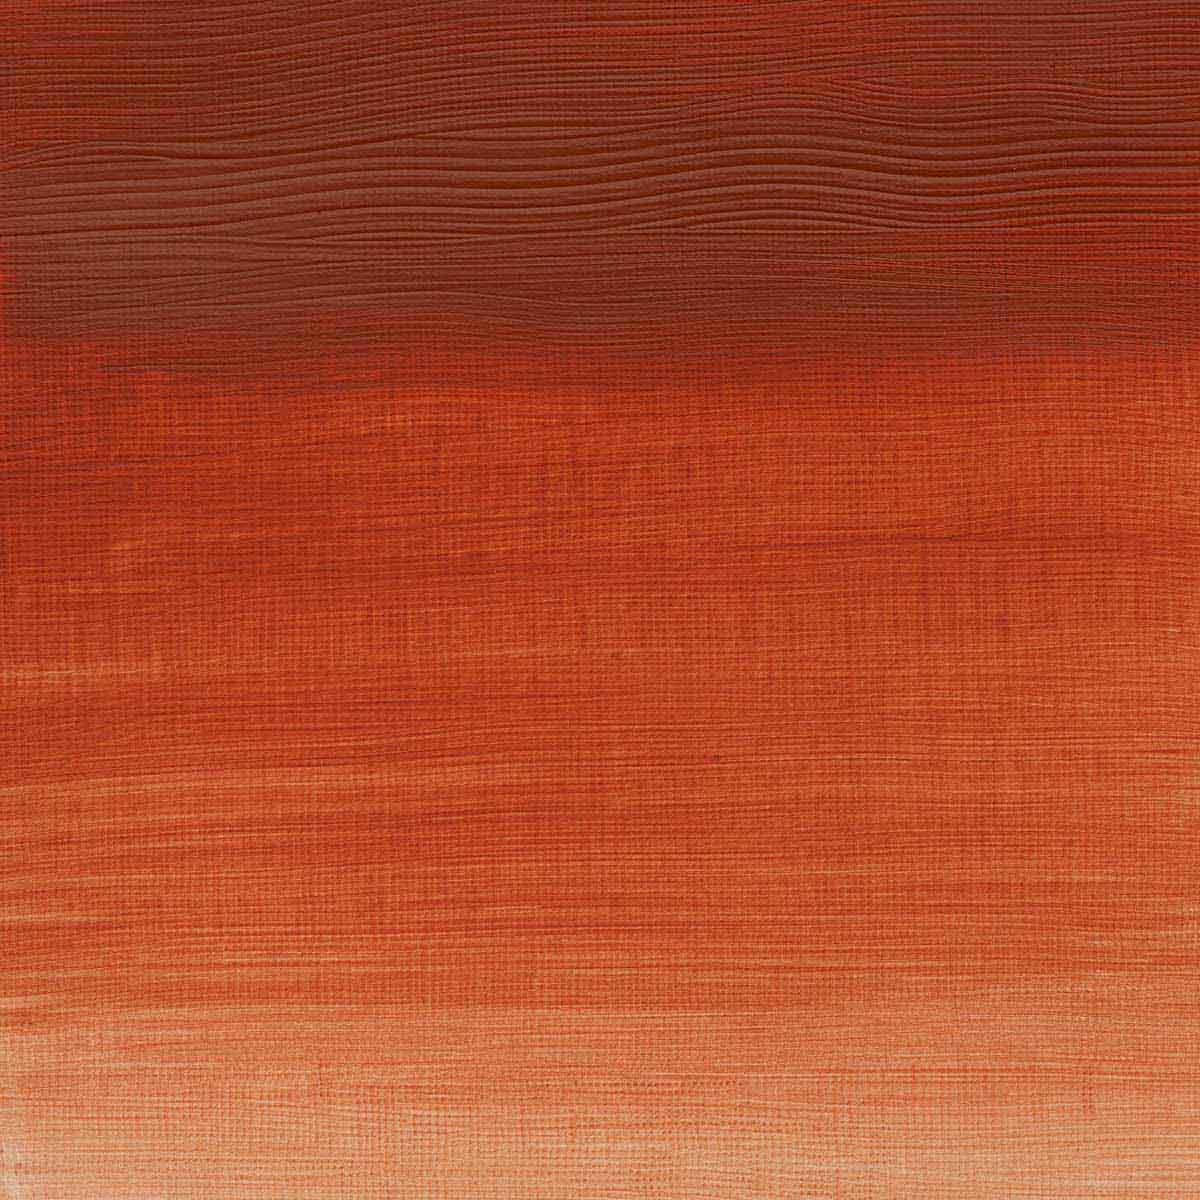 Winsor e Newton - Colore acrilico degli artisti professionisti - 60 ml - rosso chiaro